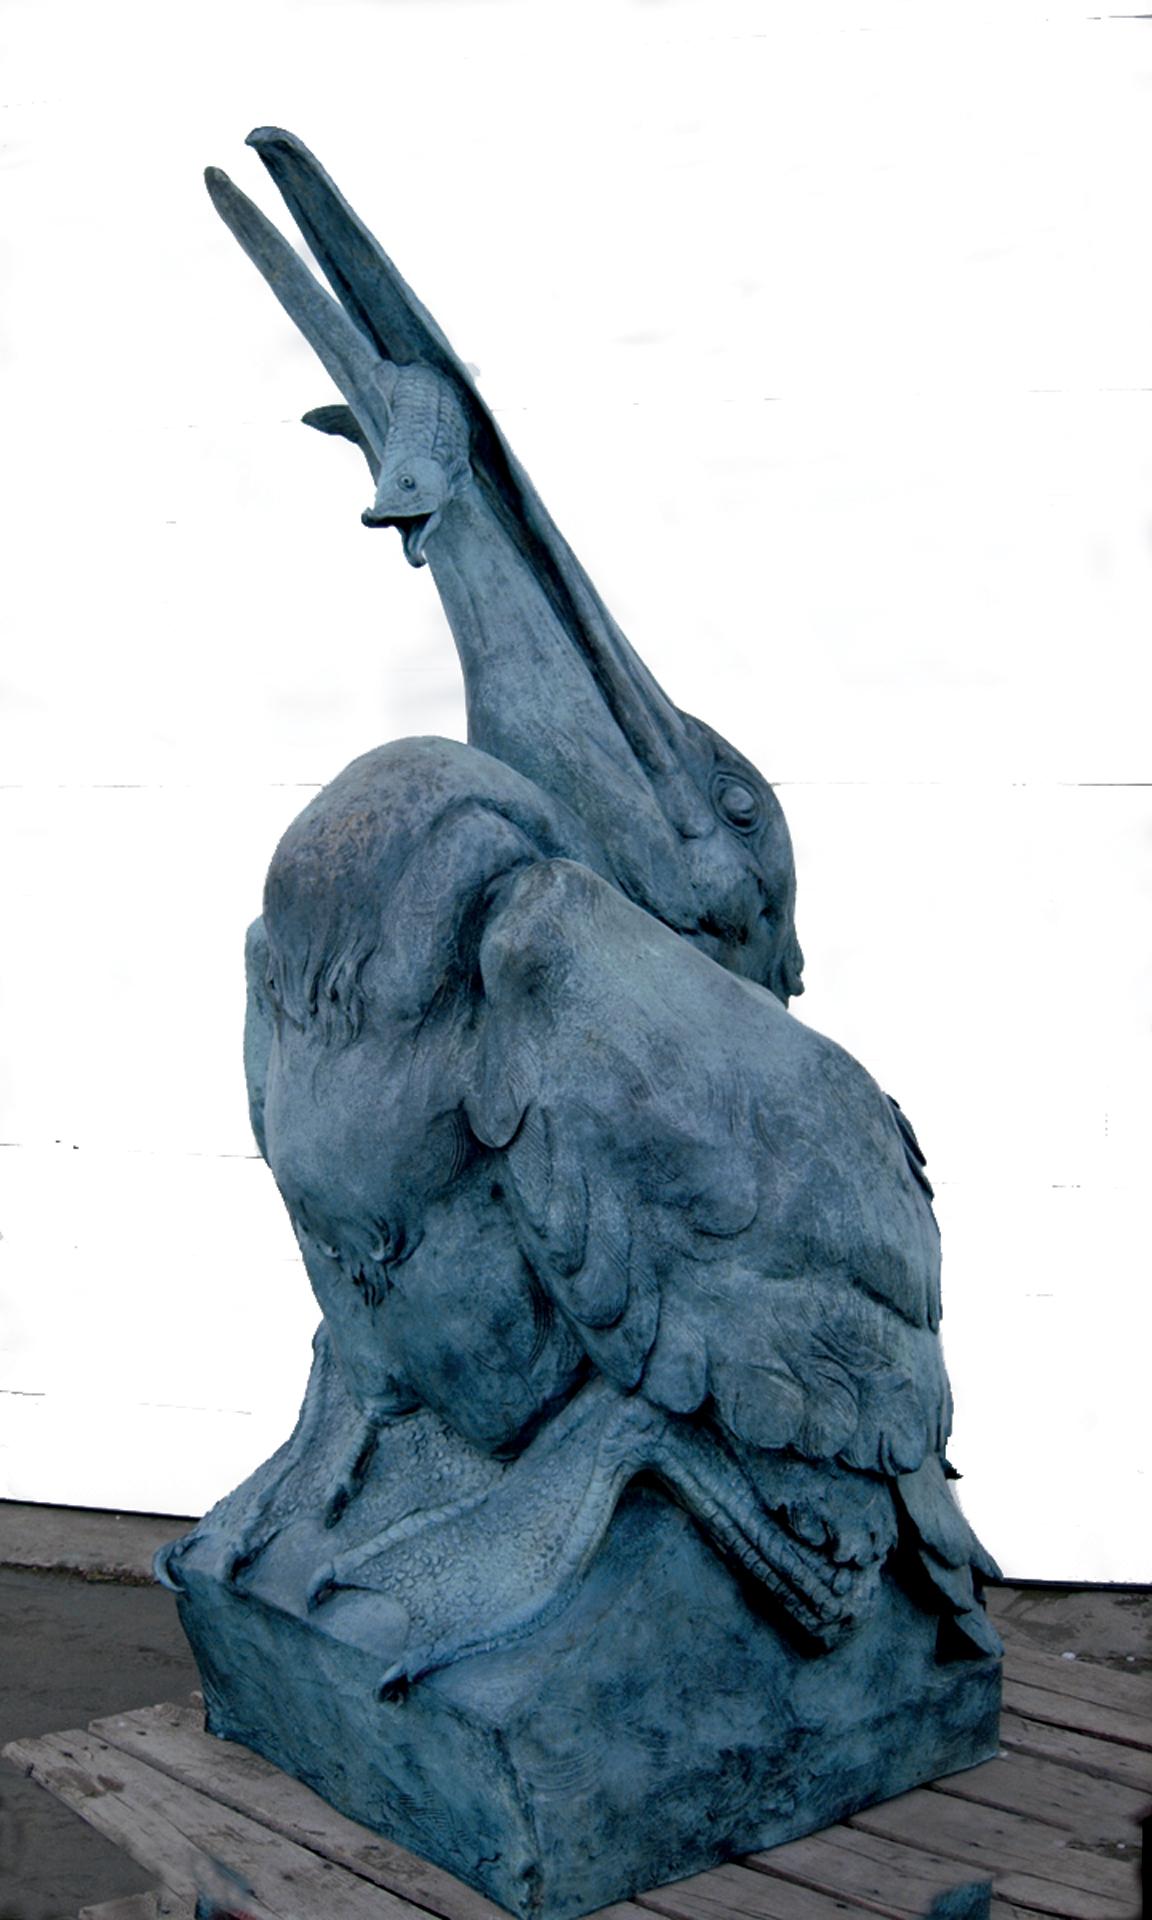 Sandy Scott Still-Life Sculpture - Artful Angler, 76" high bronze